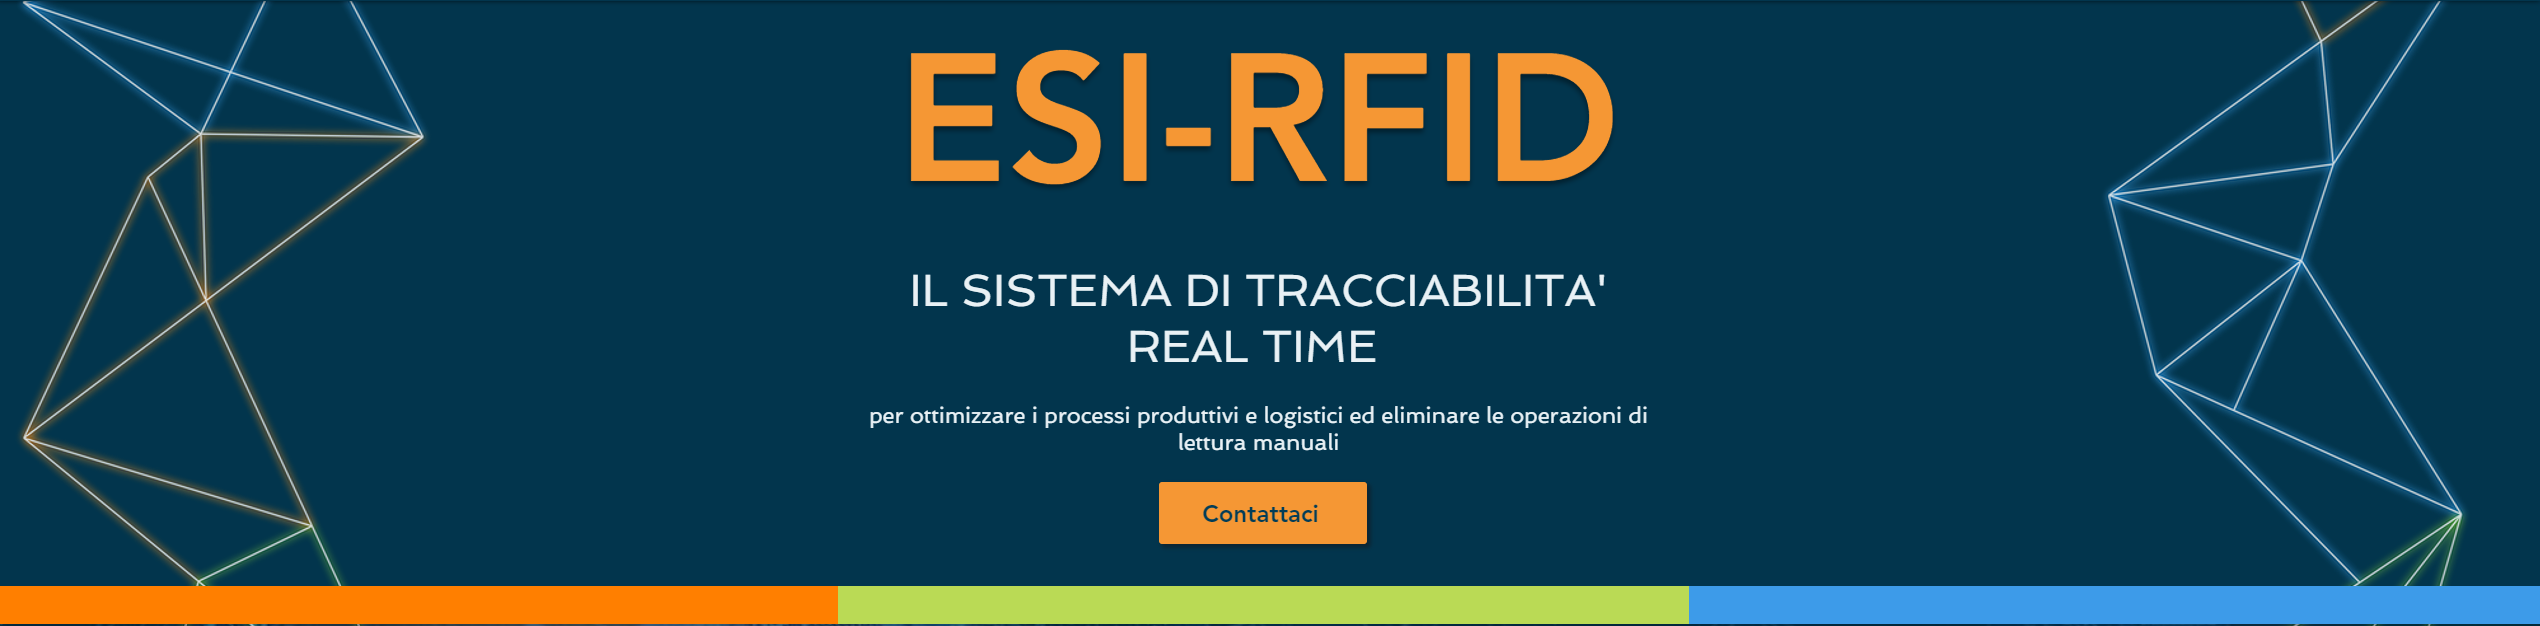 ESI-RFID - Il Sistema di Tracciabilità Real Time 01